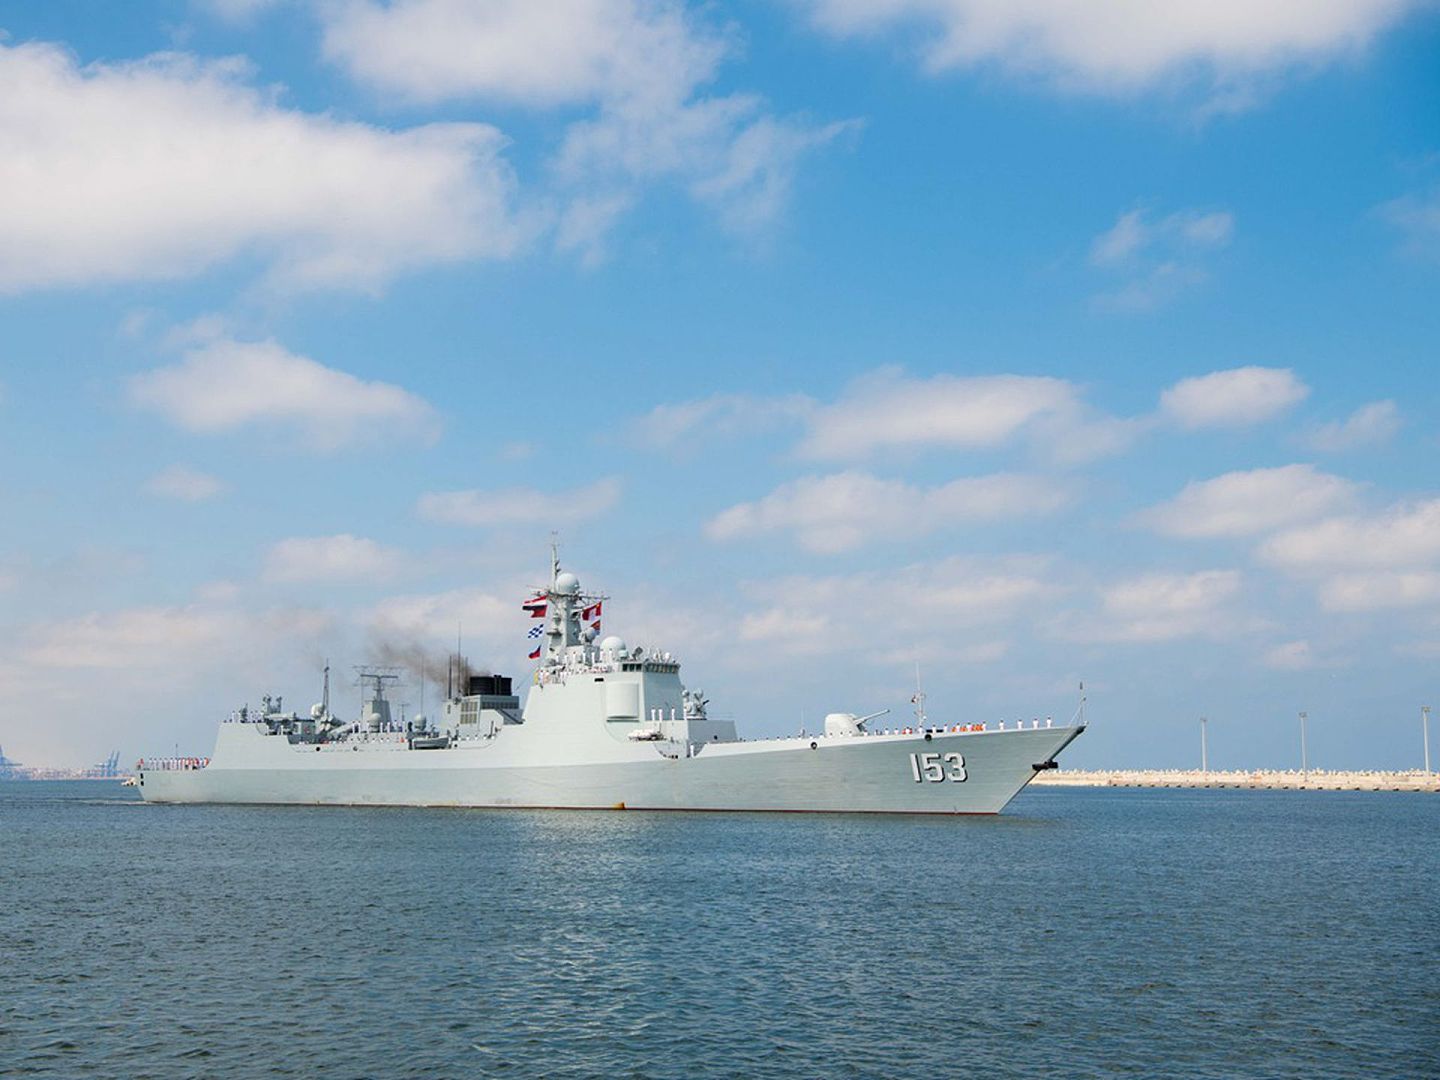 2019年8月16日，中国海军第32批护航编队西安舰抵达埃及亚历山大港，开启为期4天的技术停靠补给。随后将前往索马里海域进行护送商船任务。（新华社）